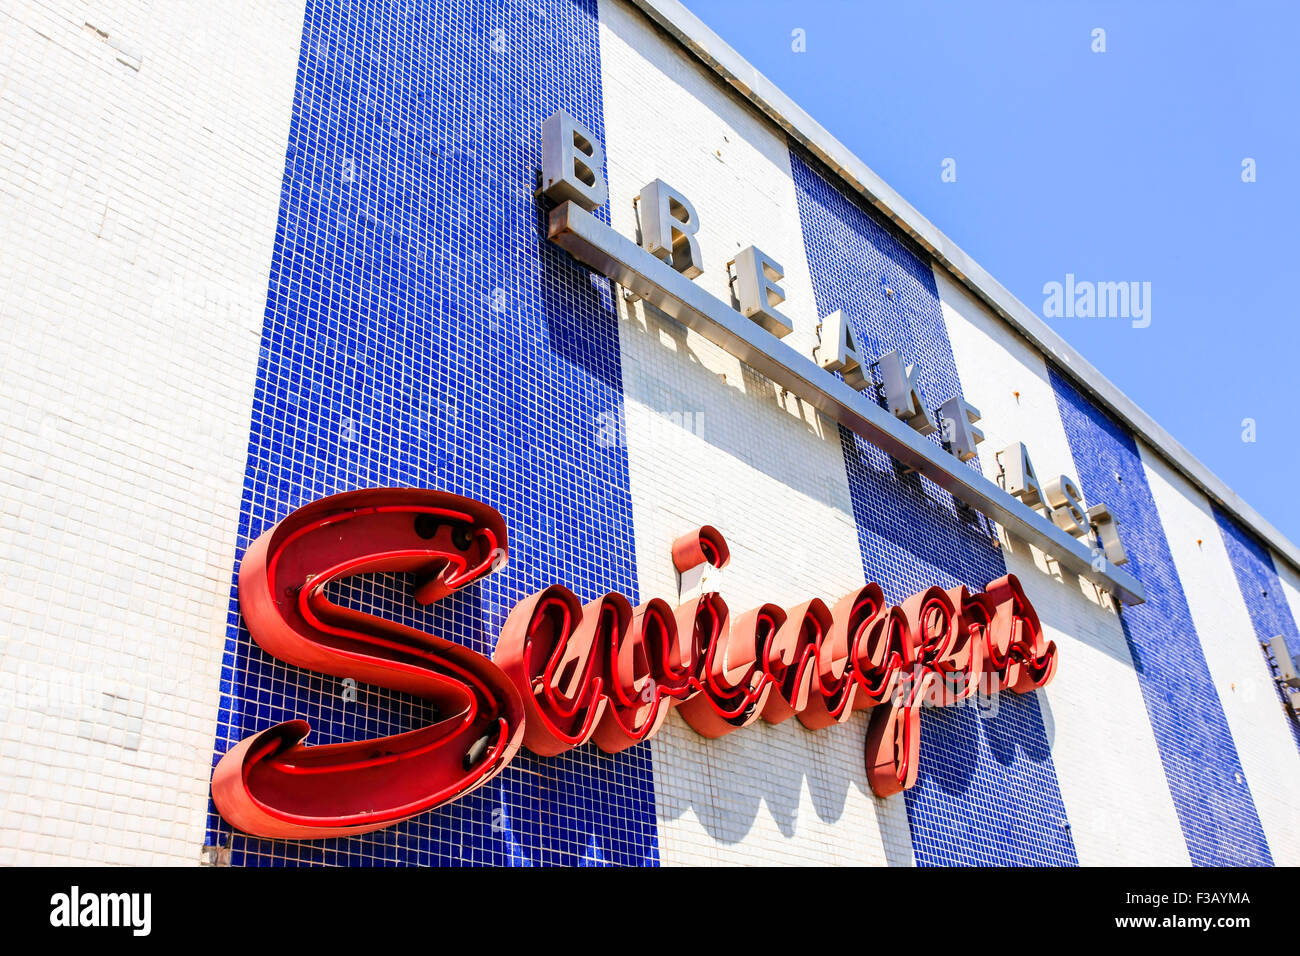 Swingers Desayuno Restaurante señal elevada en el centro de la ciudad de Santa Mónica, California Foto de stock